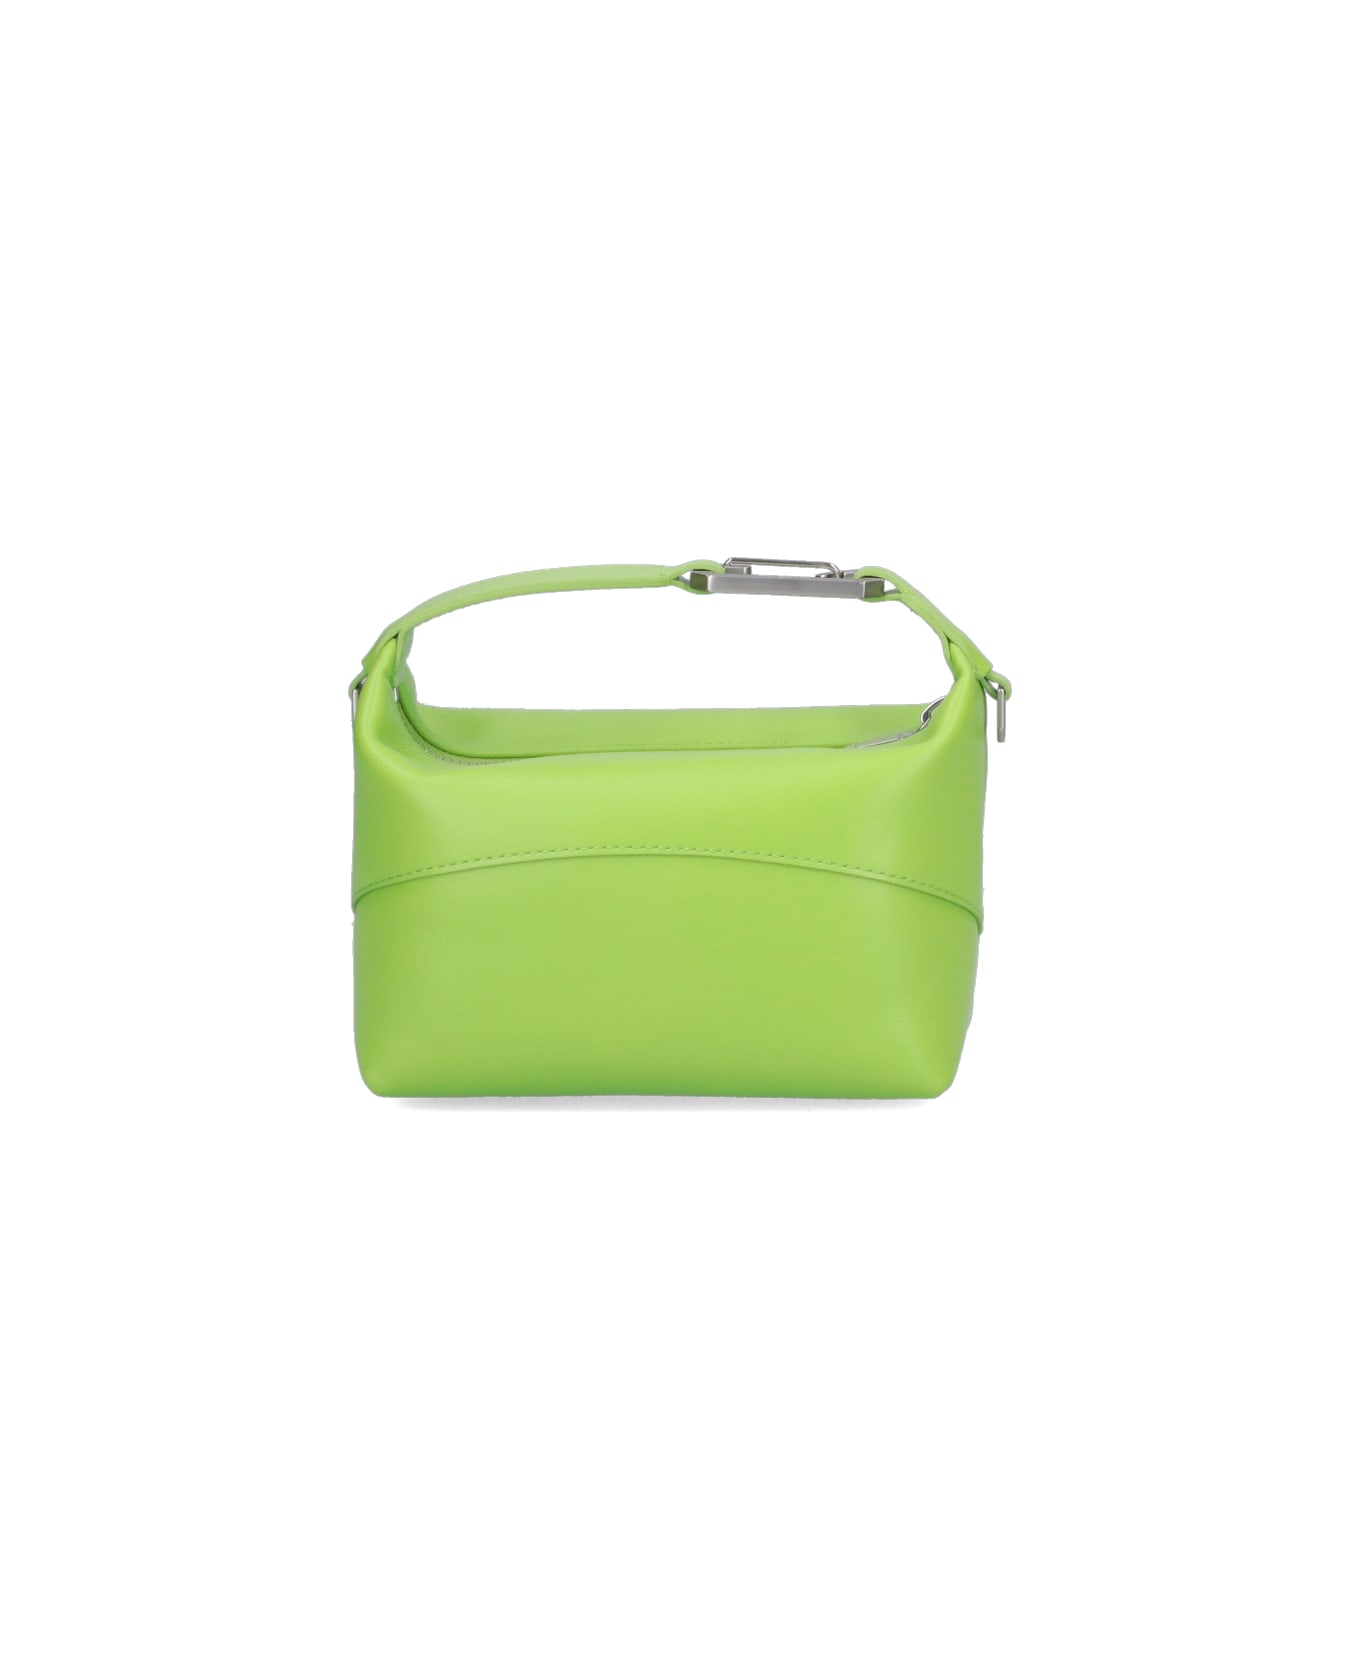 EÉRA 'moon' Handbag - Green